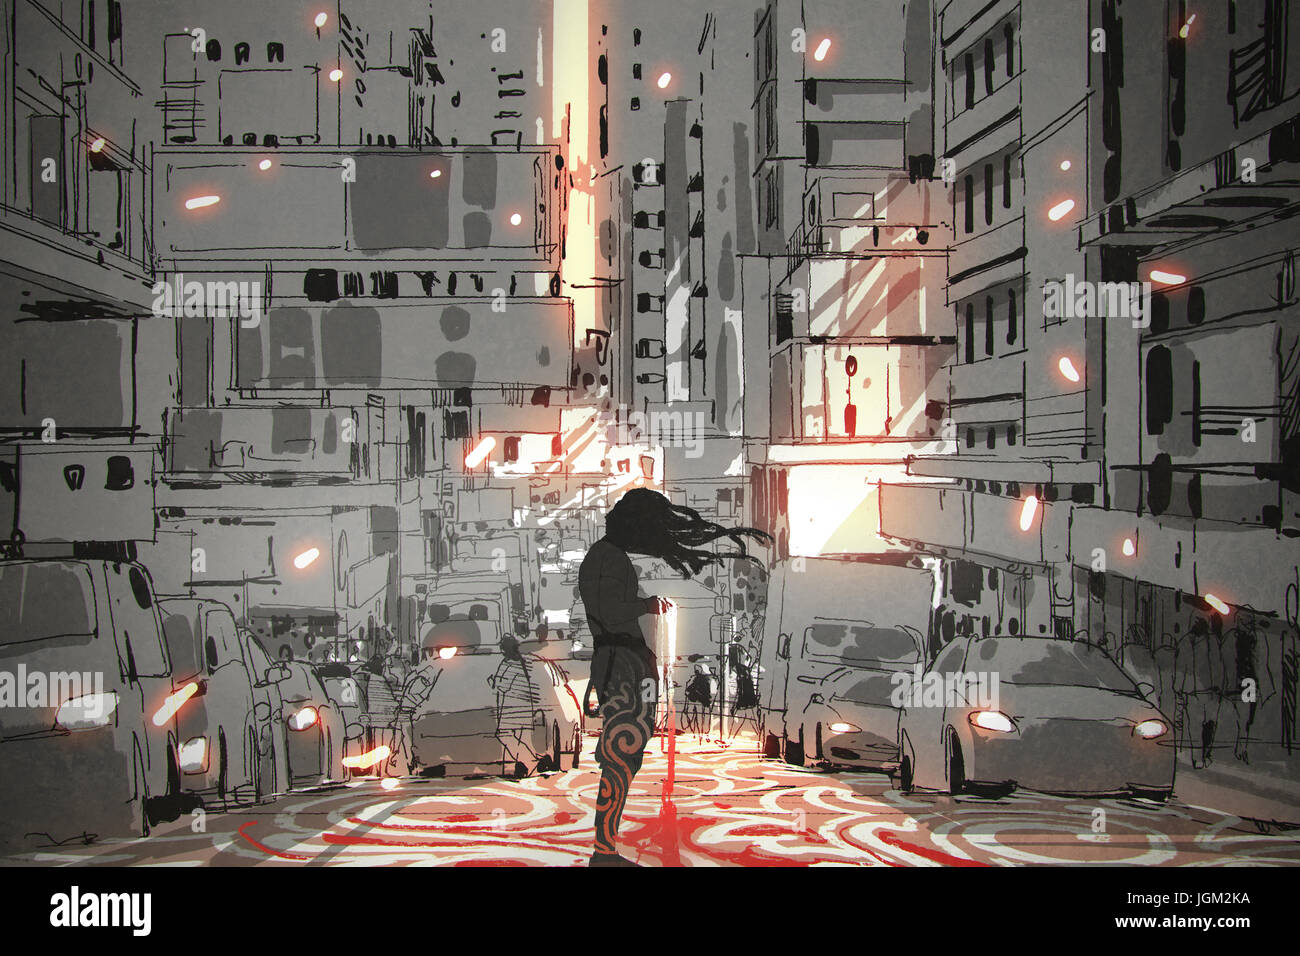 Uomo con capelli lunghi in piedi in città con motivo grafico sulla strada, arte digitale stile, illustrazione pittura Foto Stock